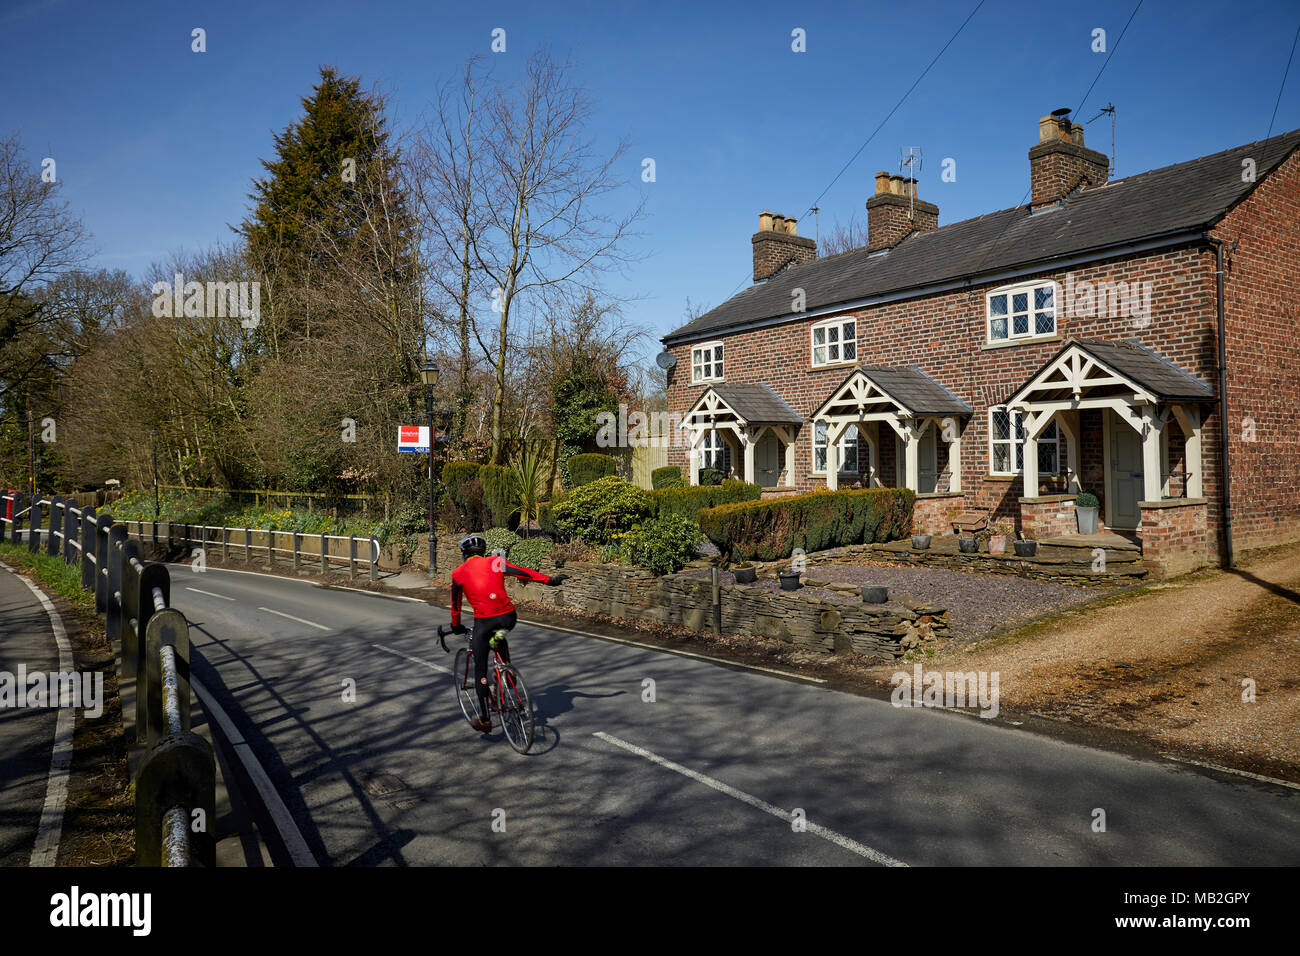 Construit en brique rouge assez Mobberley village cottages avec terrasse Banque D'Images